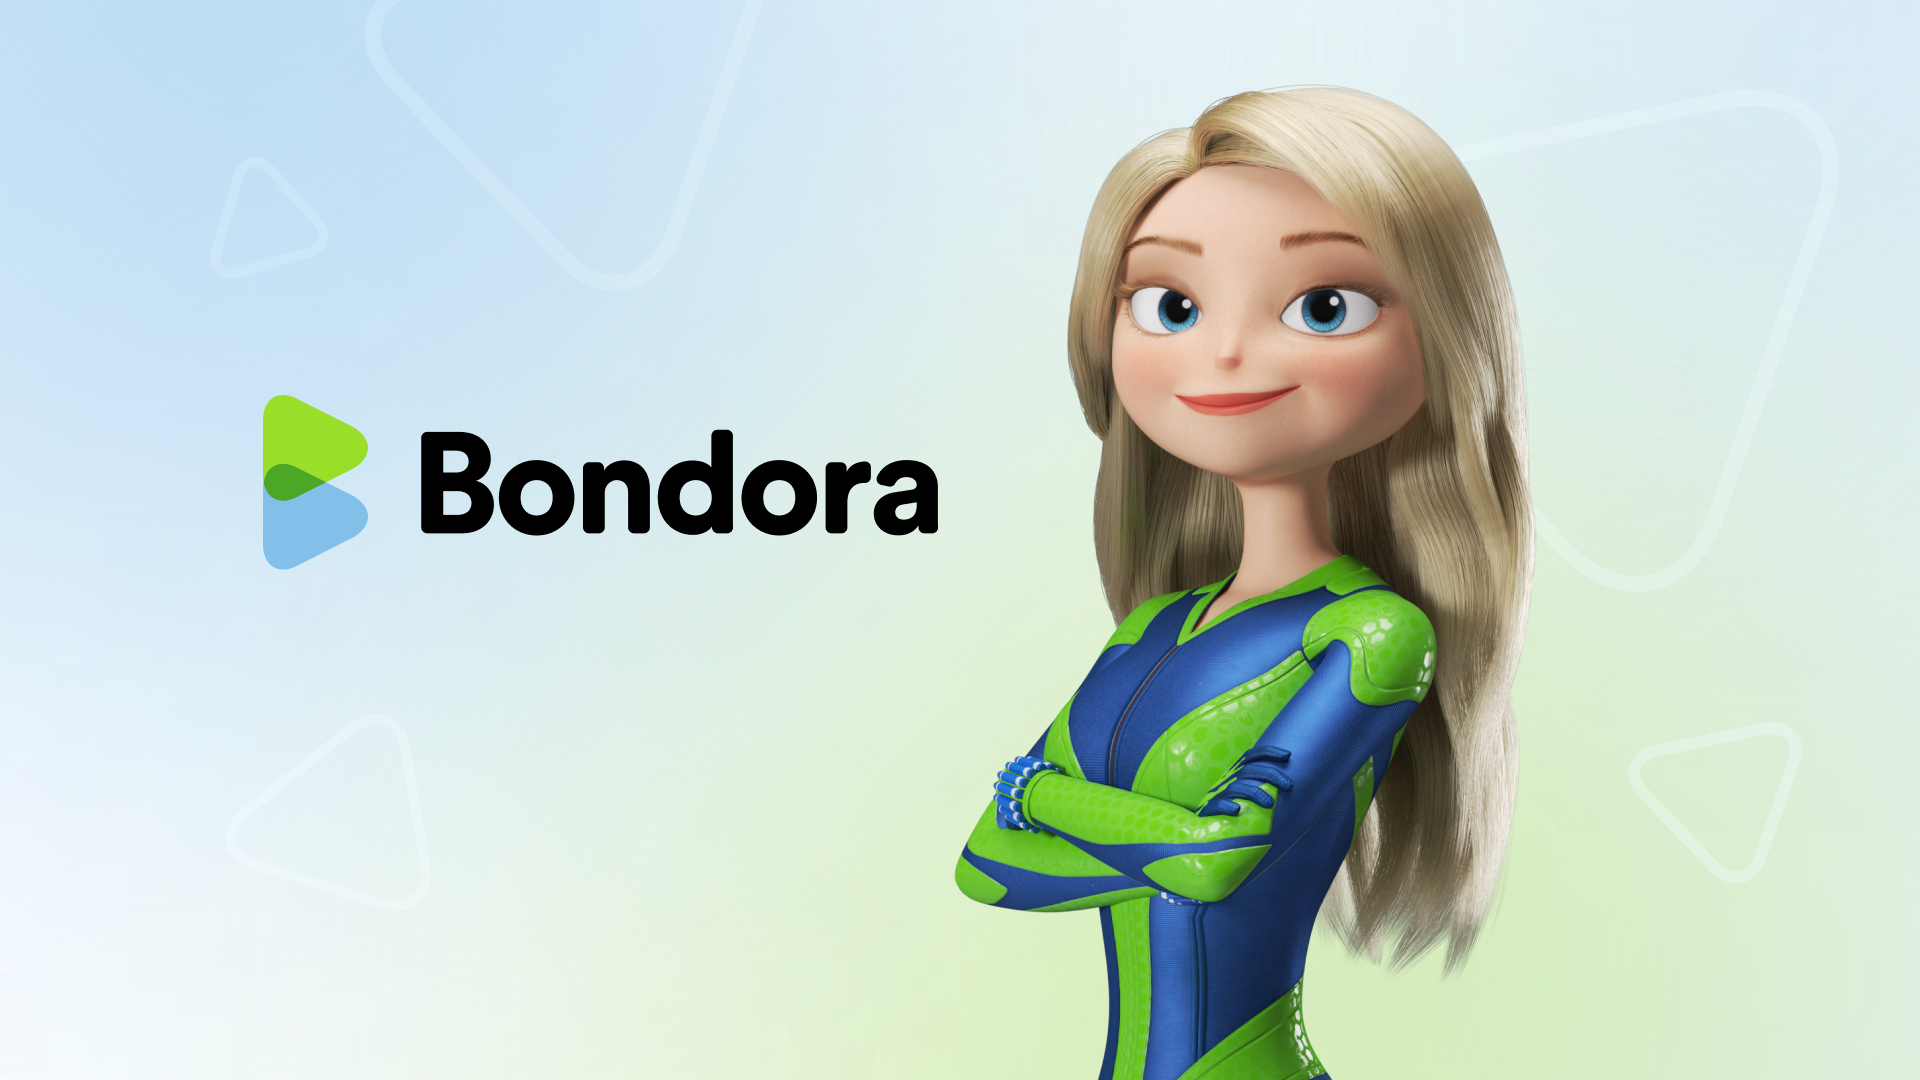 Bondora toys